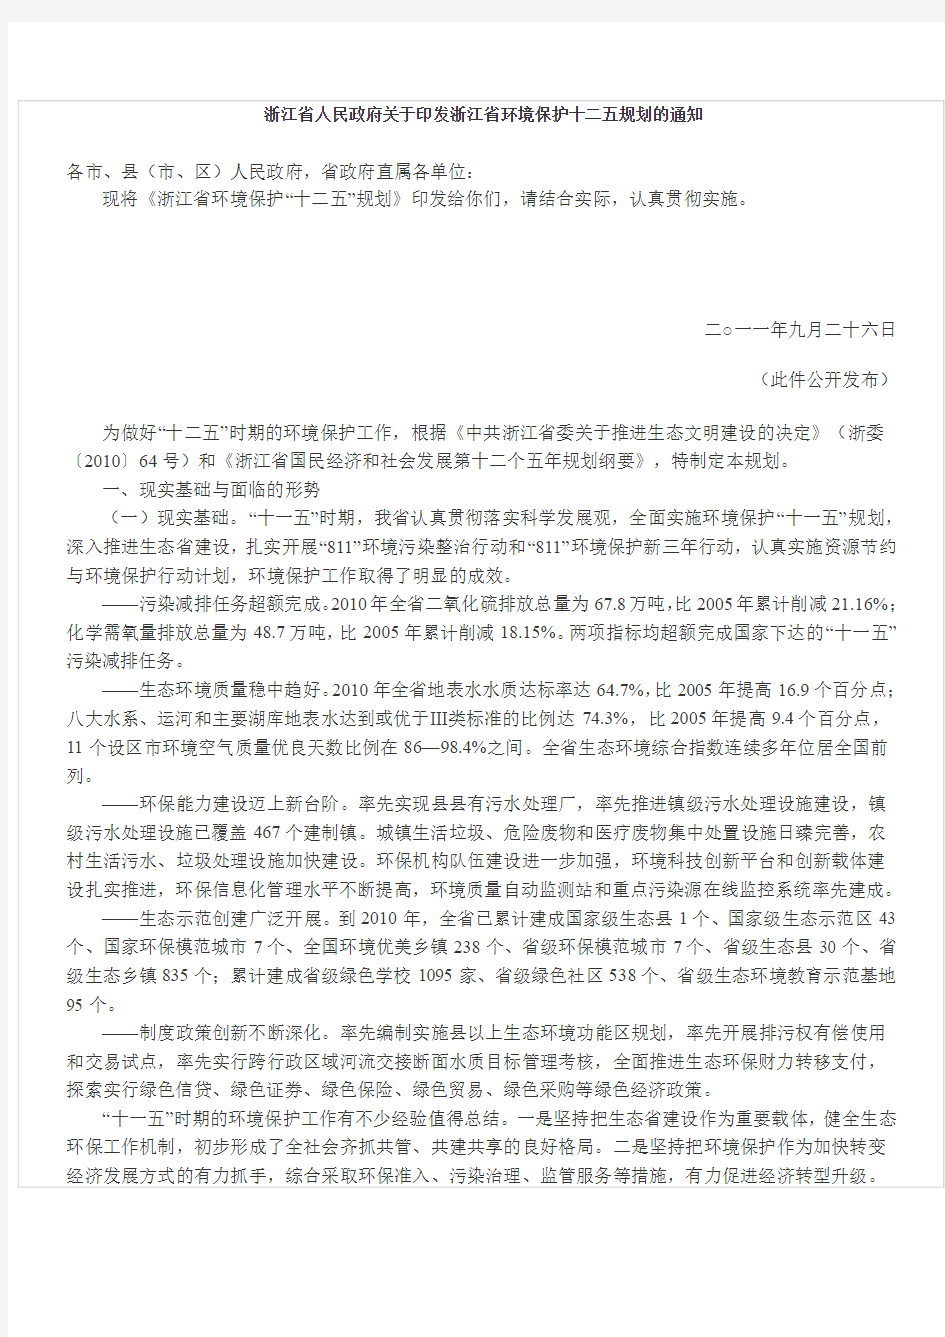 浙江省人民政府关于印发浙江省环境保护十二五规划的通知